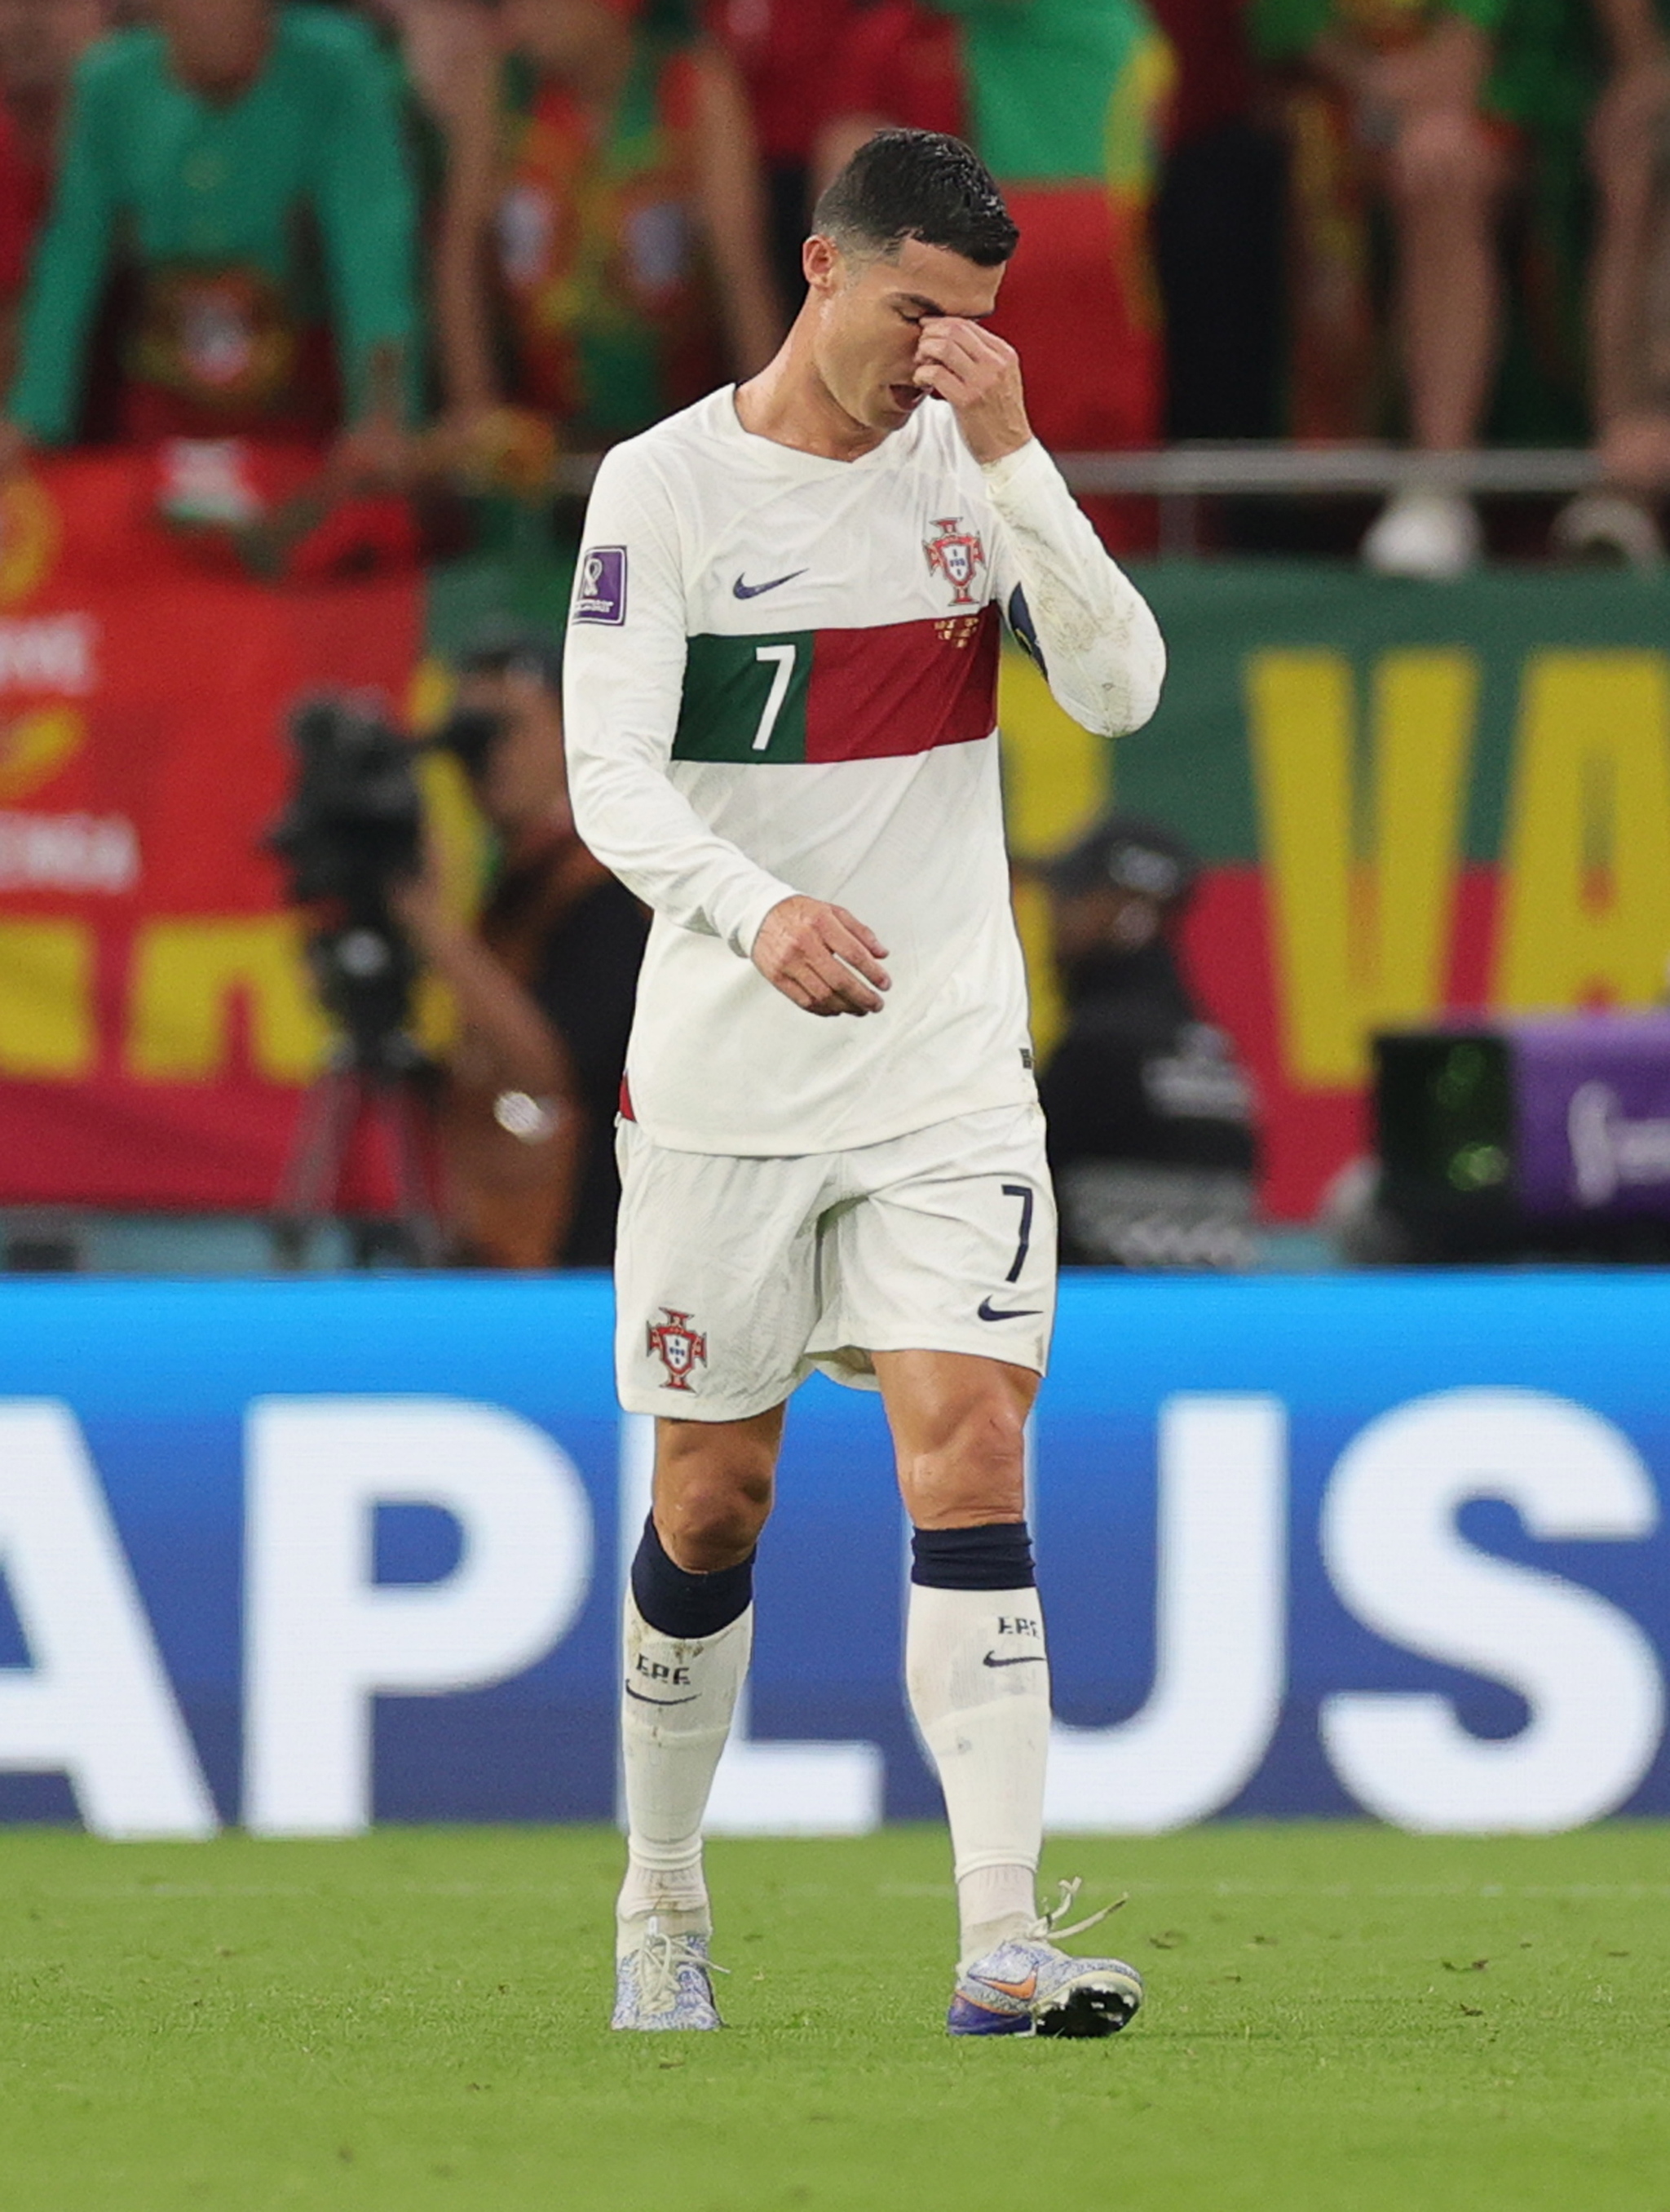 Ronaldo, khóc buồn, fan: Những khoảnh khắc Ronaldo khóc buồn trên sân cỏ khiến fan hâm mộ cảm thấy rất xúc động và đồng cảm. Nếu bạn muốn tìm kiếm những hình ảnh ấn tượng liên quan đến cảm xúc của Ronaldo và fan hâm mộ trong những thời khắc khó khăn, hãy tìm kiếm các hình ảnh liên quan để được trải nghiệm những cảm xúc chân thật nhất.